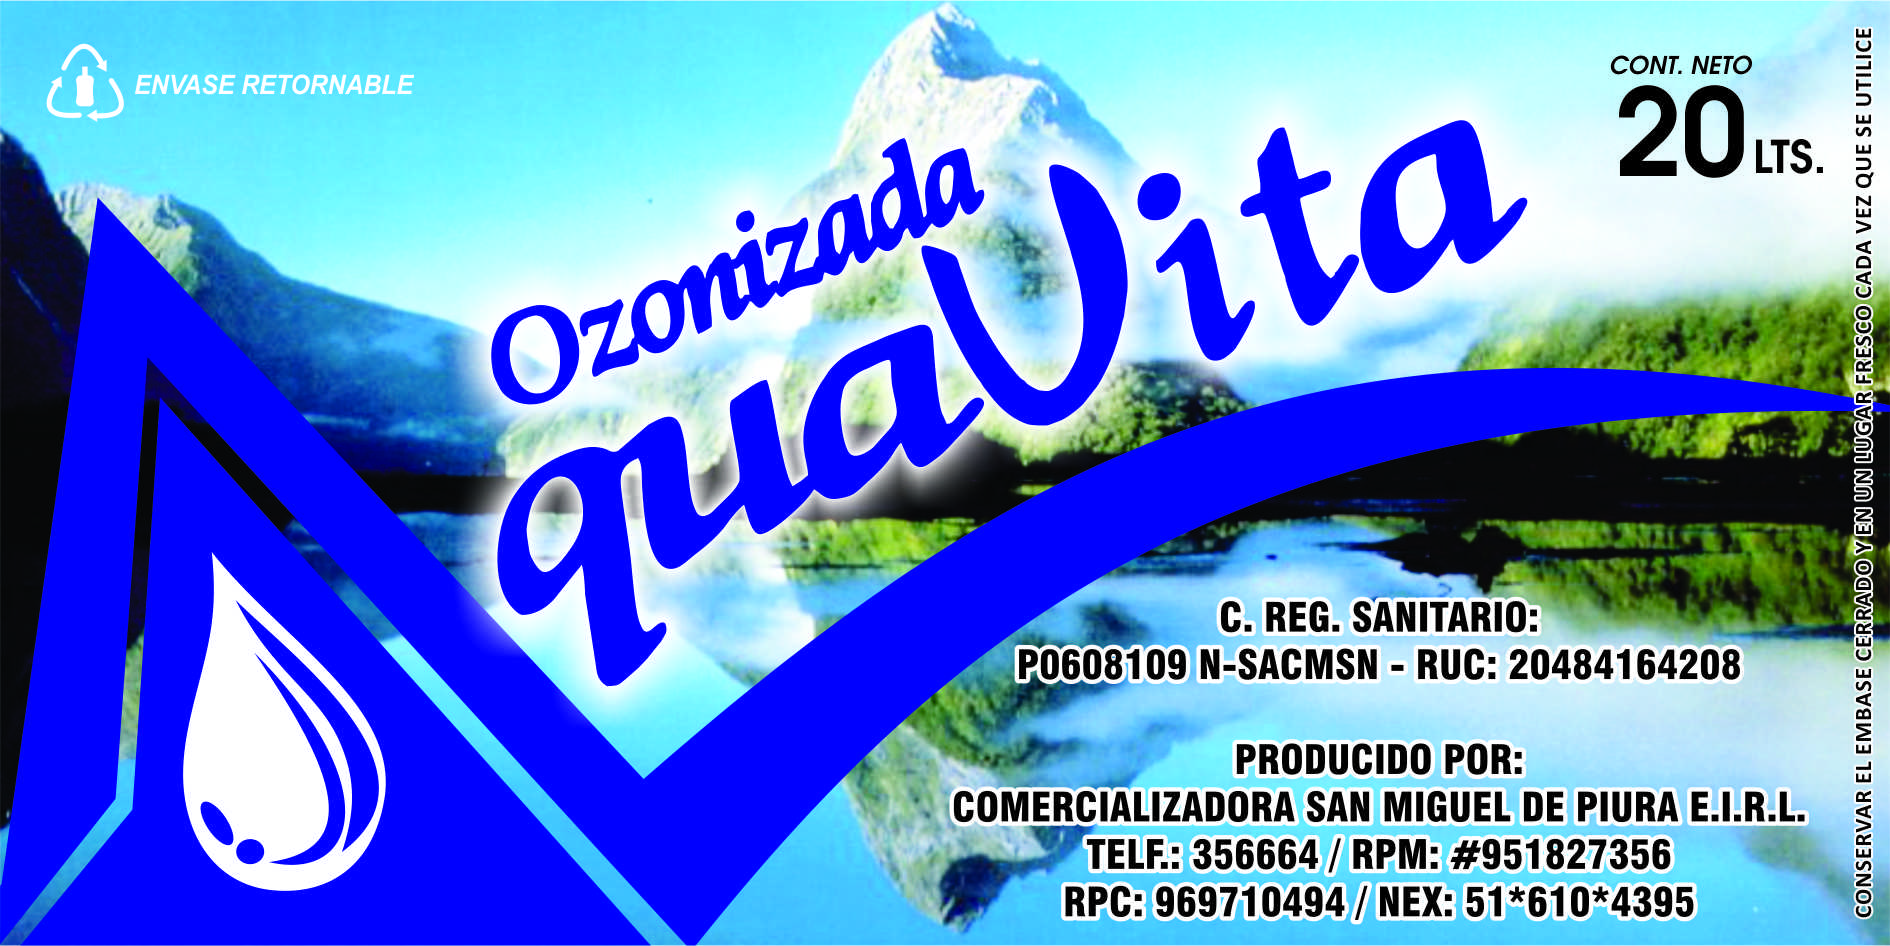 Agua de Mesa Aquavita Ozonizada logo